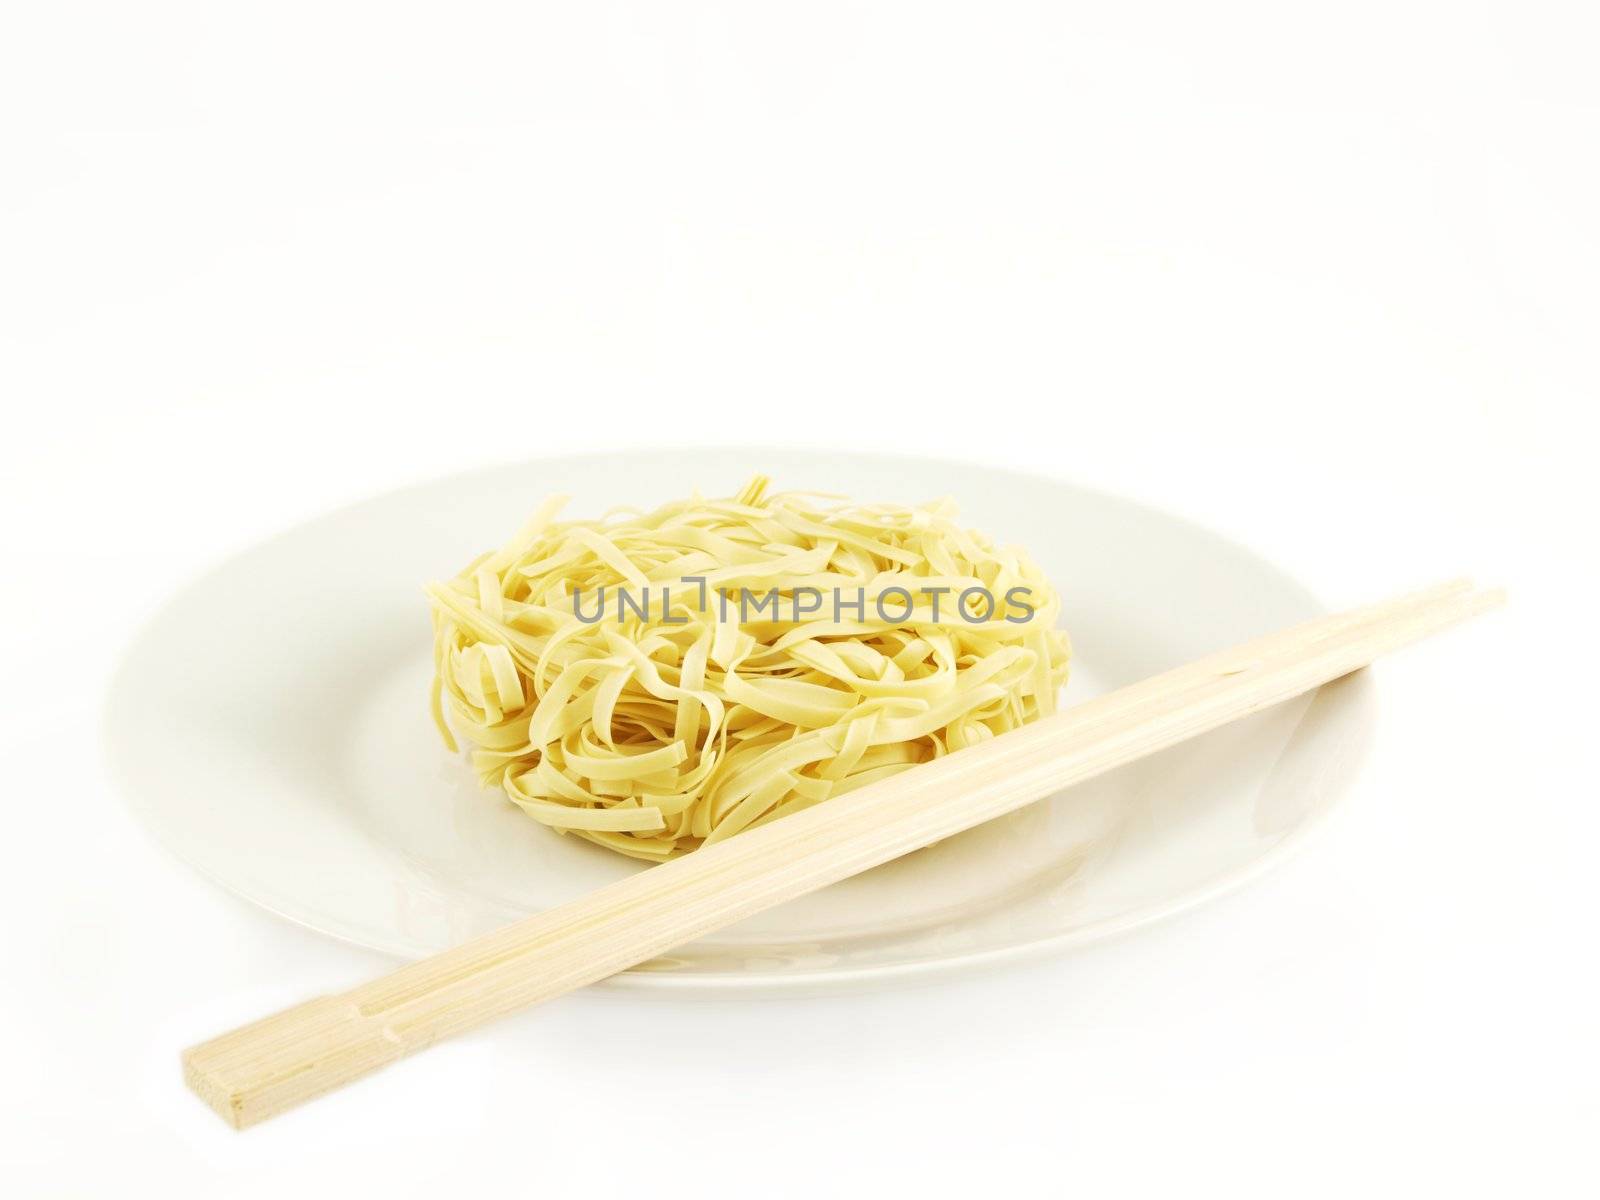 Noodles by Arvebettum